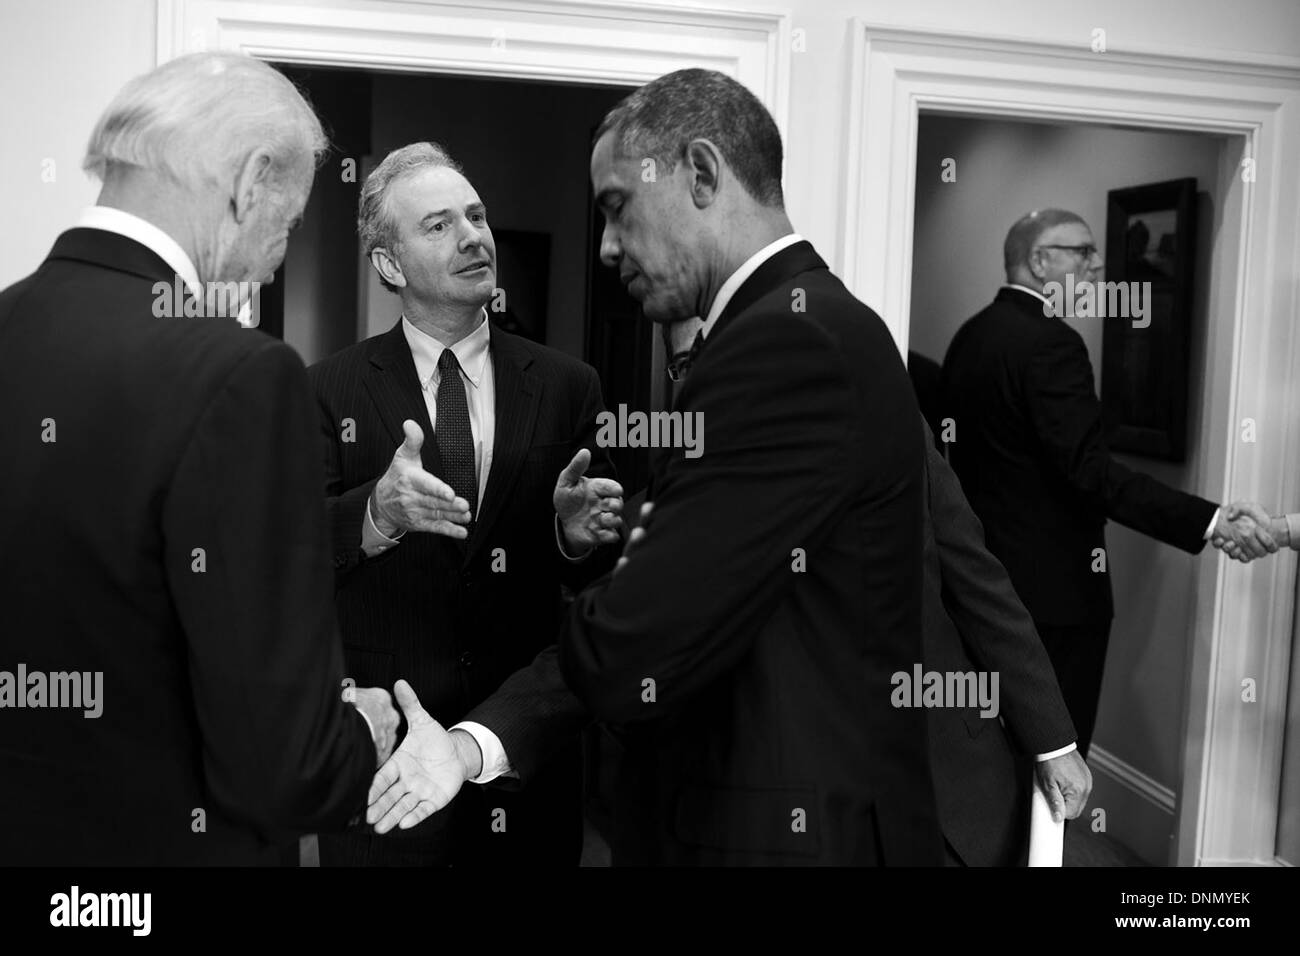 Le président américain Barack Obama rencontre les dirigeants démocrates de la Chambre à la Maison Blanche le 15 octobre 2013 à Washington, DC. Banque D'Images